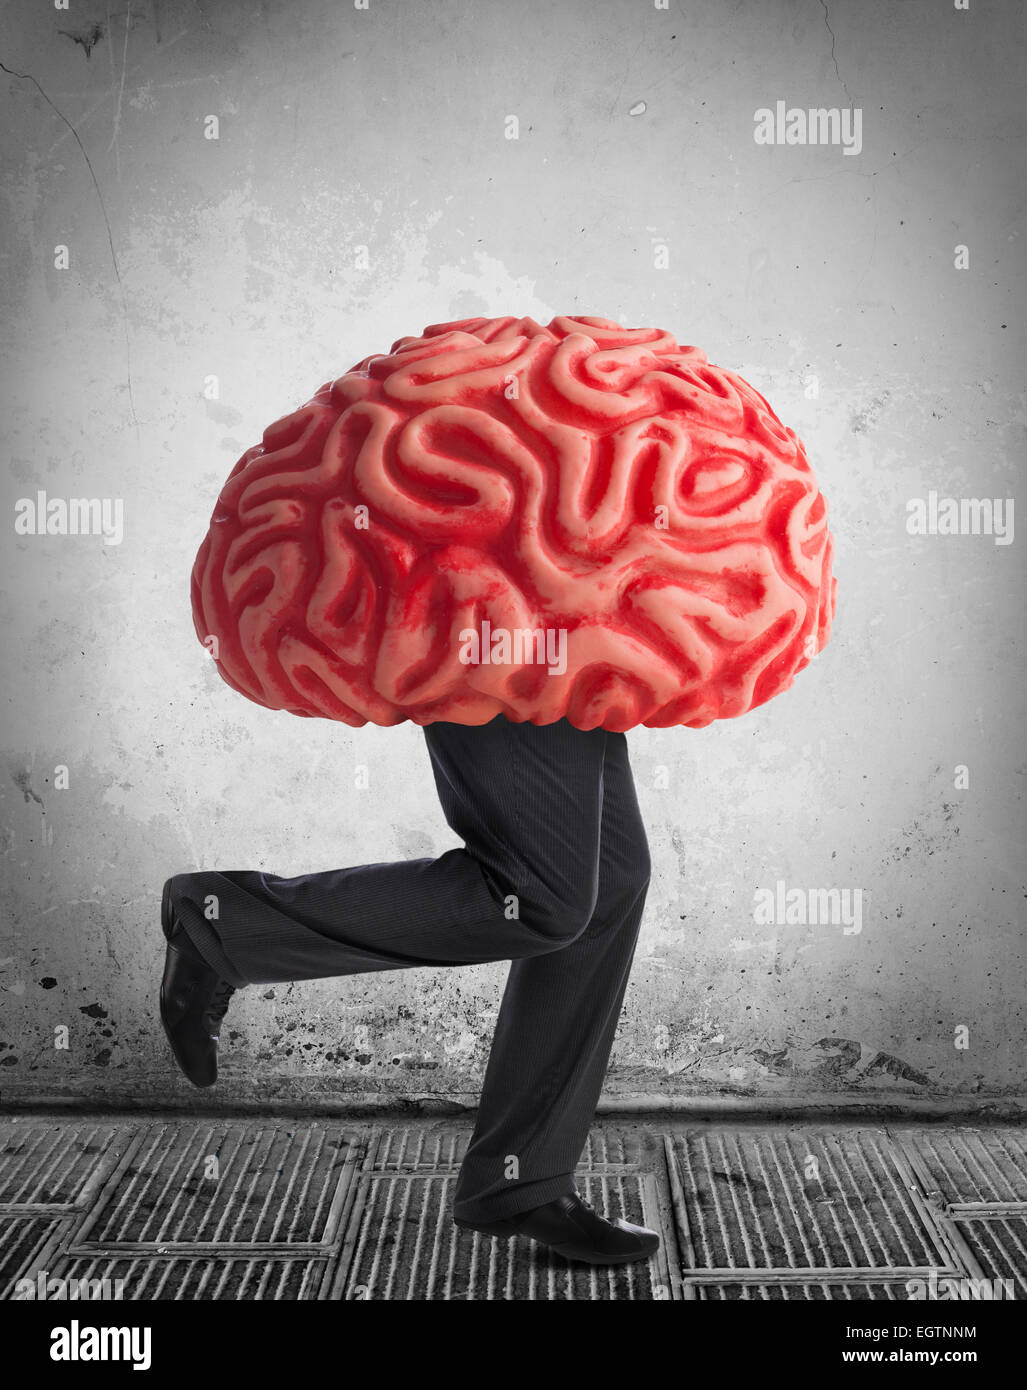 Metaphor of the brain drain. Rubber brain legs while running. Stock Photo